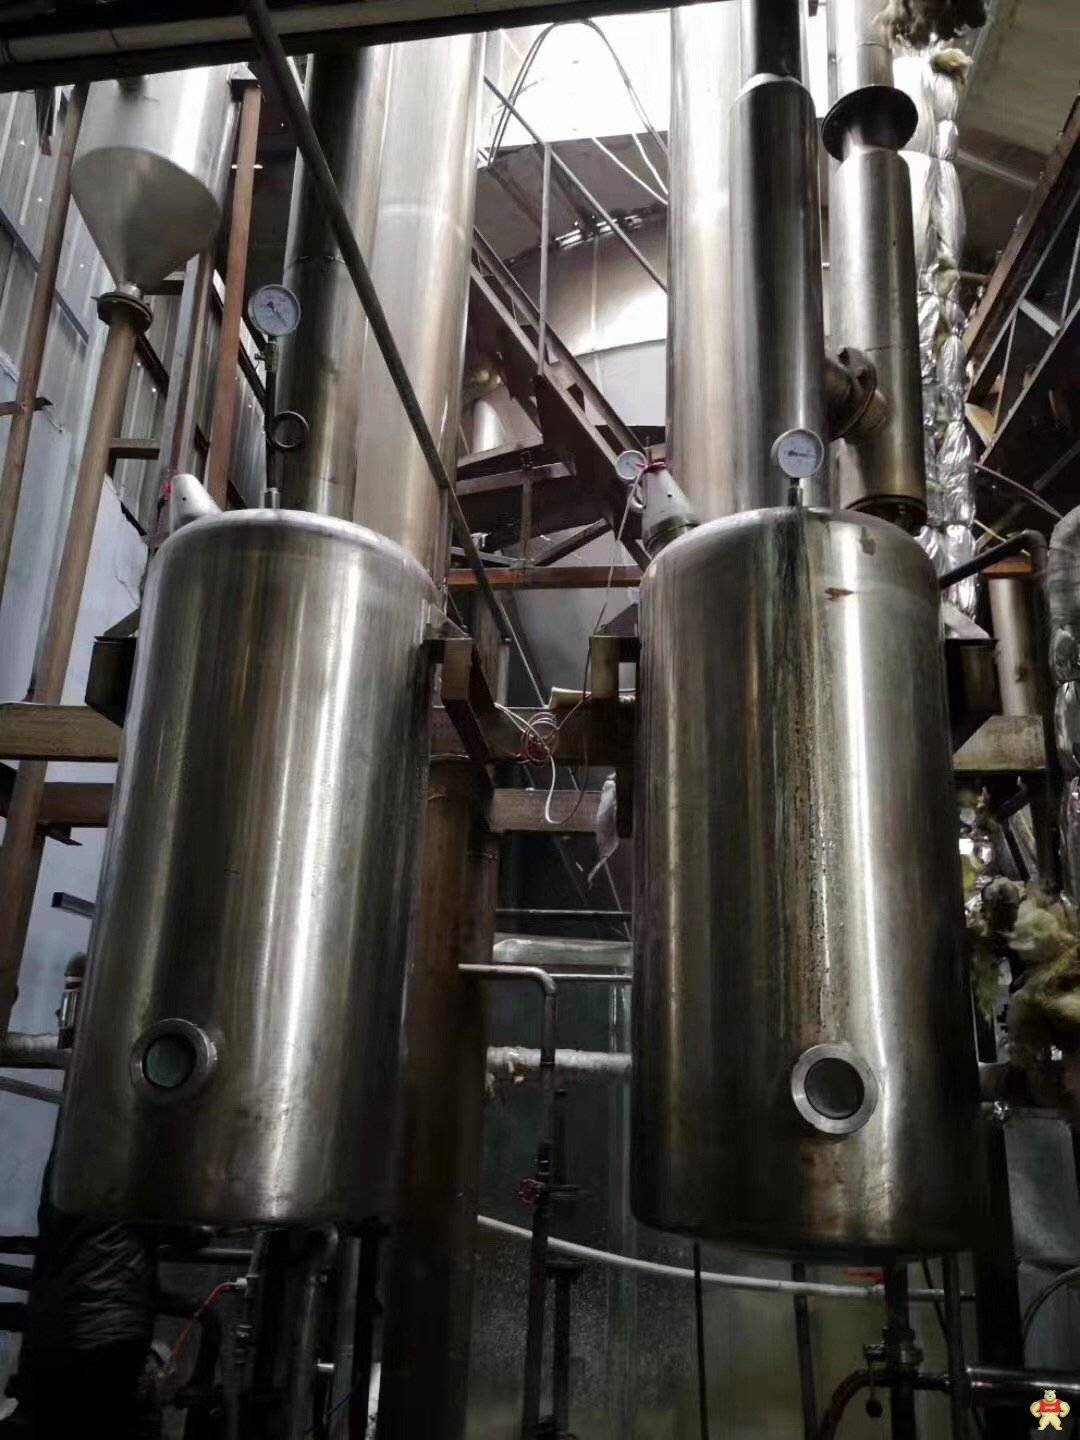 二手3吨双单效蒸发器便宜处理 二手蒸发器,二手不锈钢蒸发器,二手3吨单效蒸发器,二手不锈钢蒸发器,回收二手蒸发器